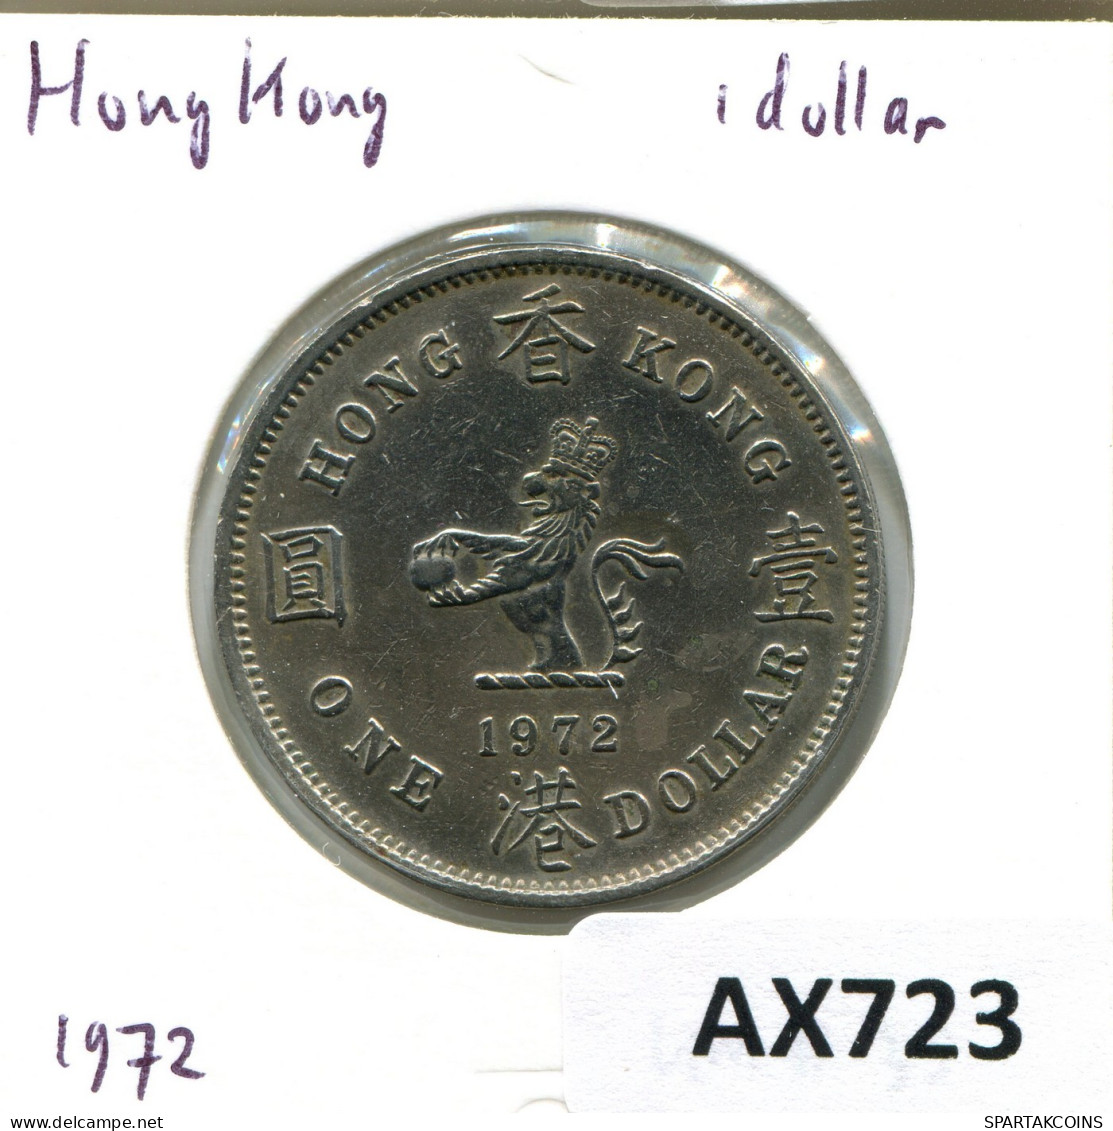 1 DOLLAR 1972 HONGKONG HONG KONG Münze #AX723.D.A - Hong Kong